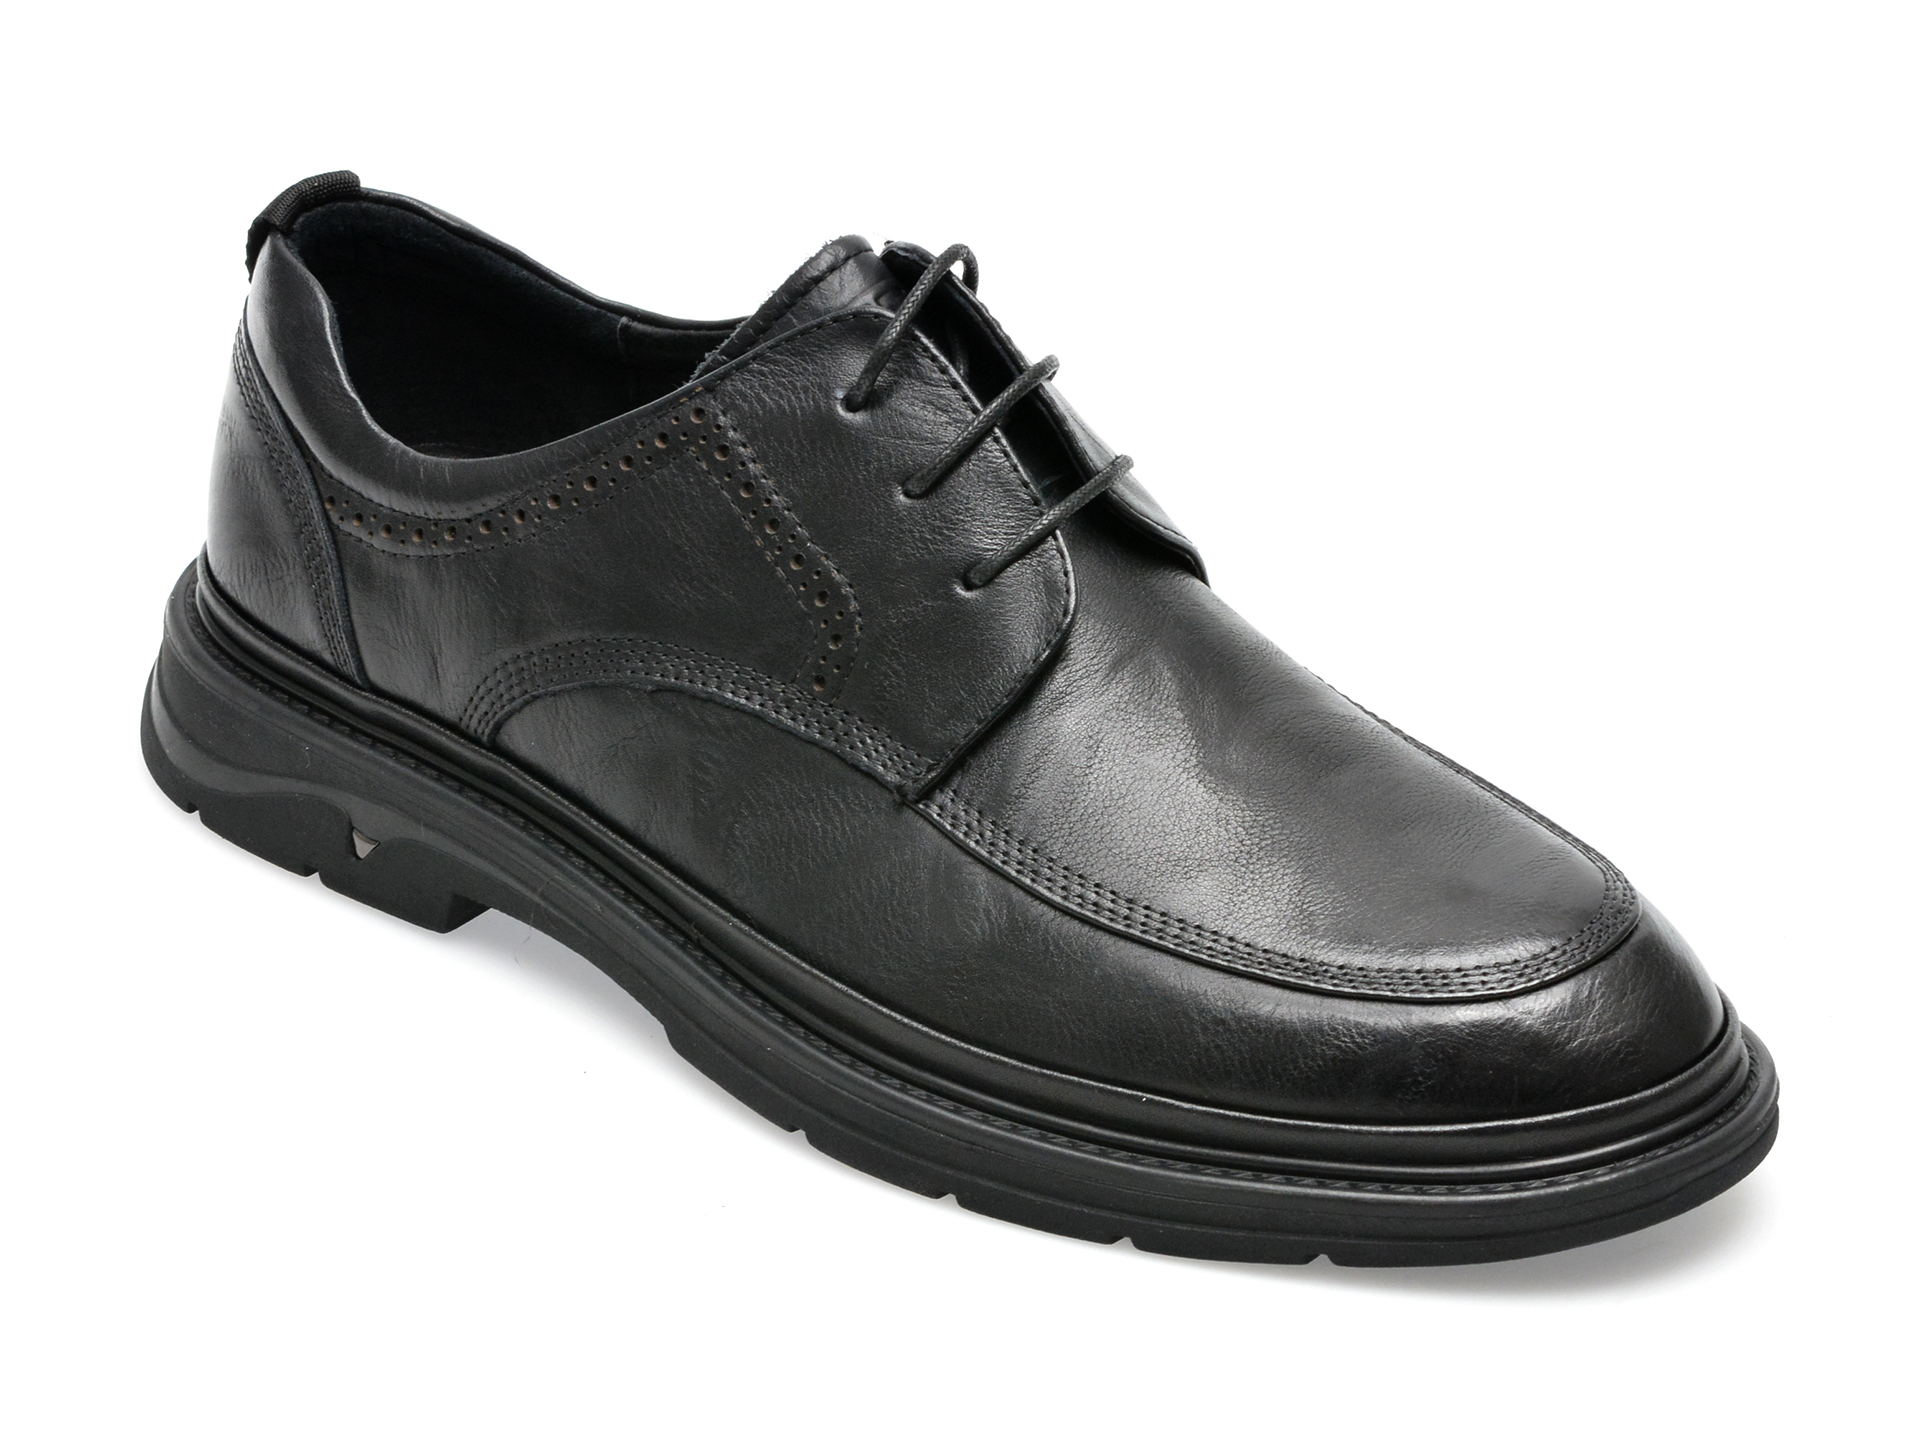 Pantofi OTTER negri, E620005, din piele naturala barbati 2023-09-22